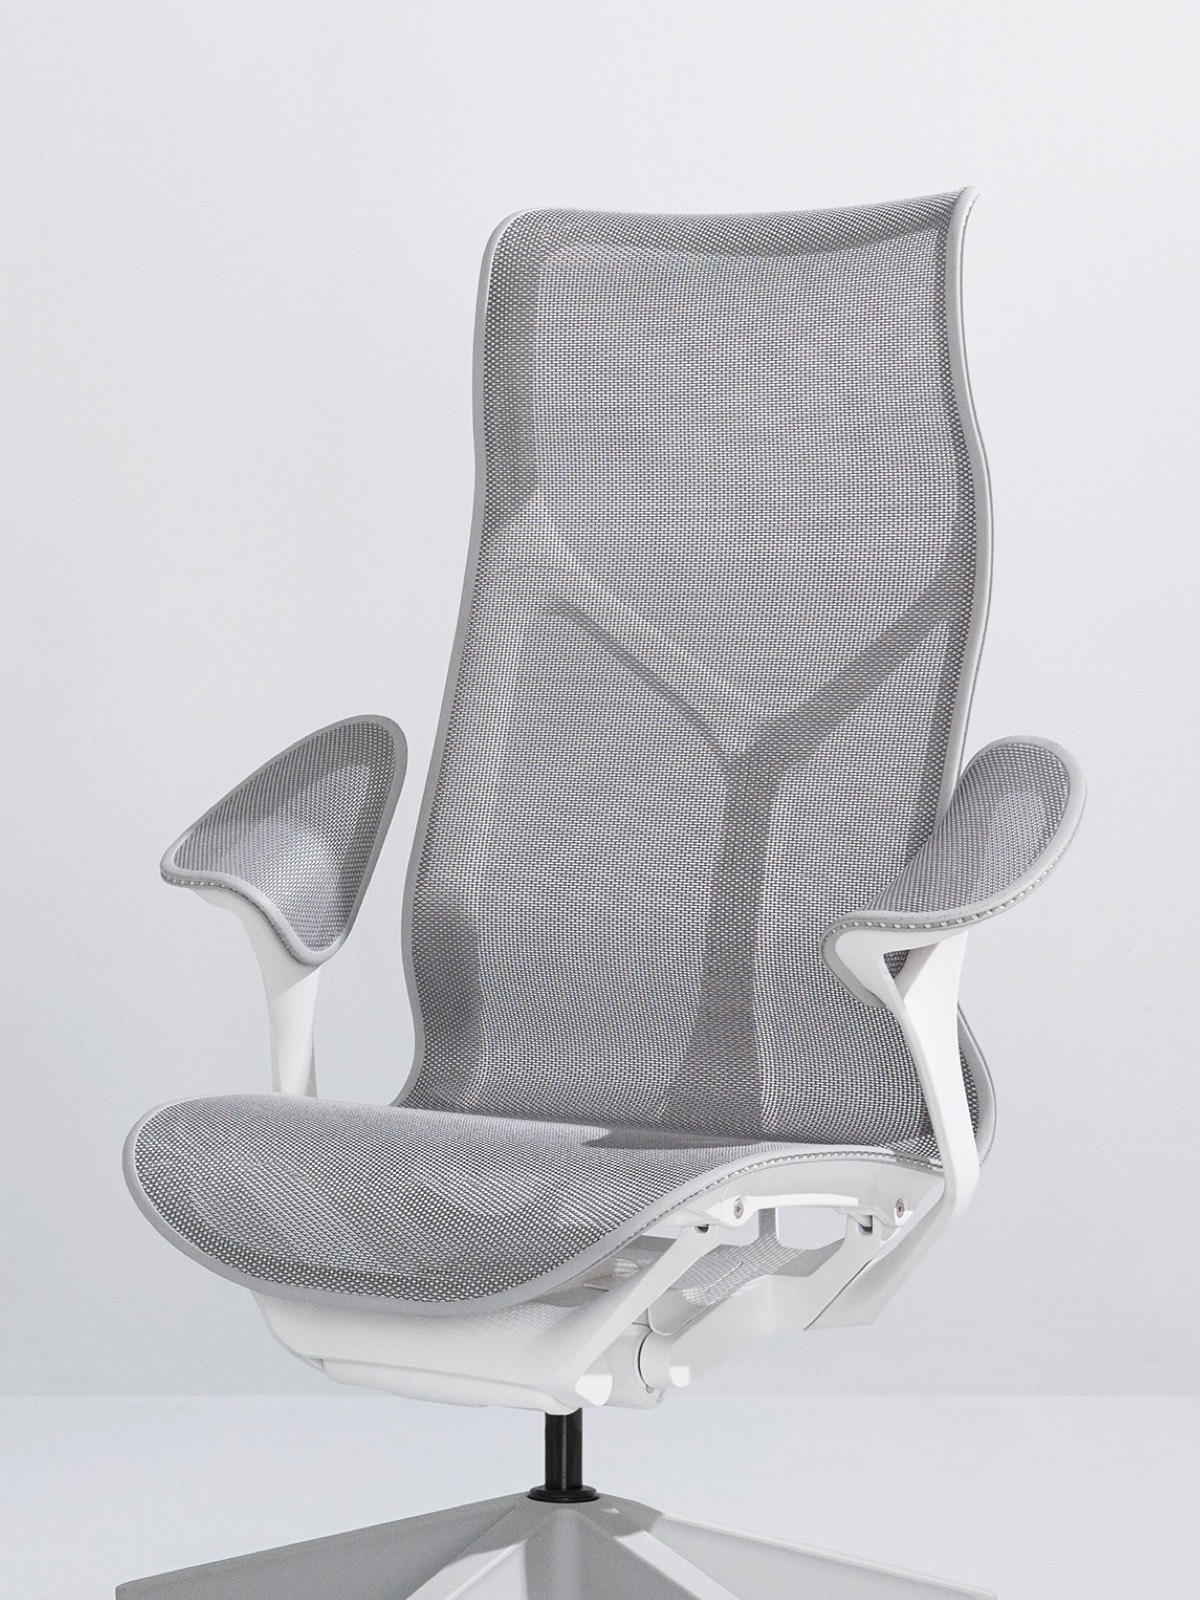 Una sedia Cosm grigia con schienale alto Mineral con montatura bianca e bracci a foglia su fondo grigio chiaro.